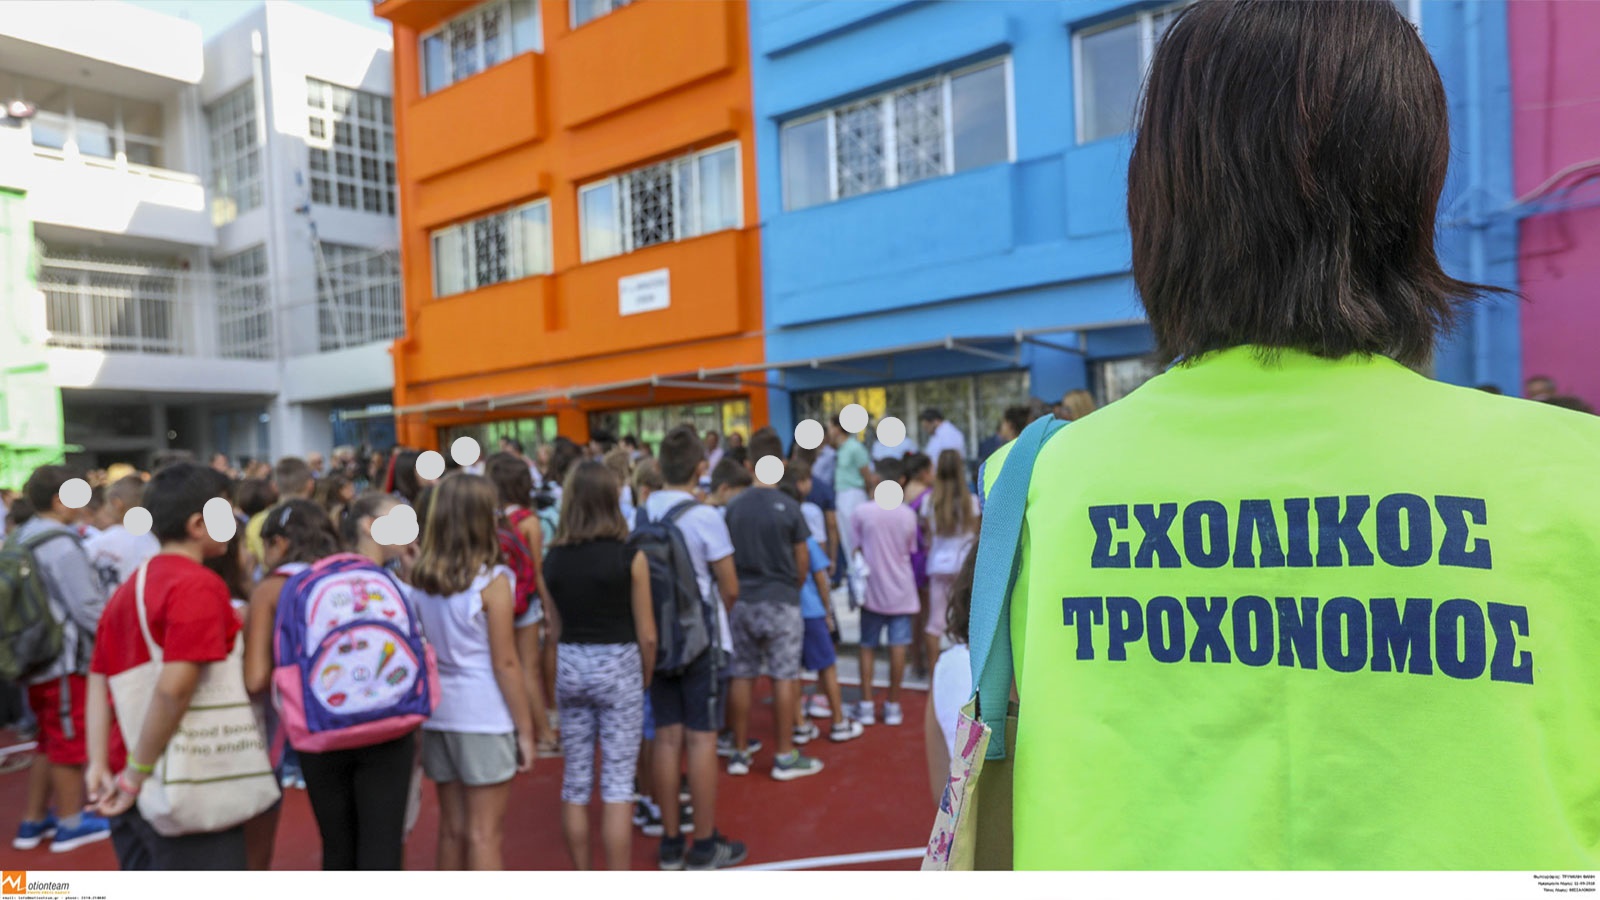 Ο Δήμος Λάρνακας ανακοινώνει ότι δέχεται αιτήσεις για Σχολικούς Τροχονόμους